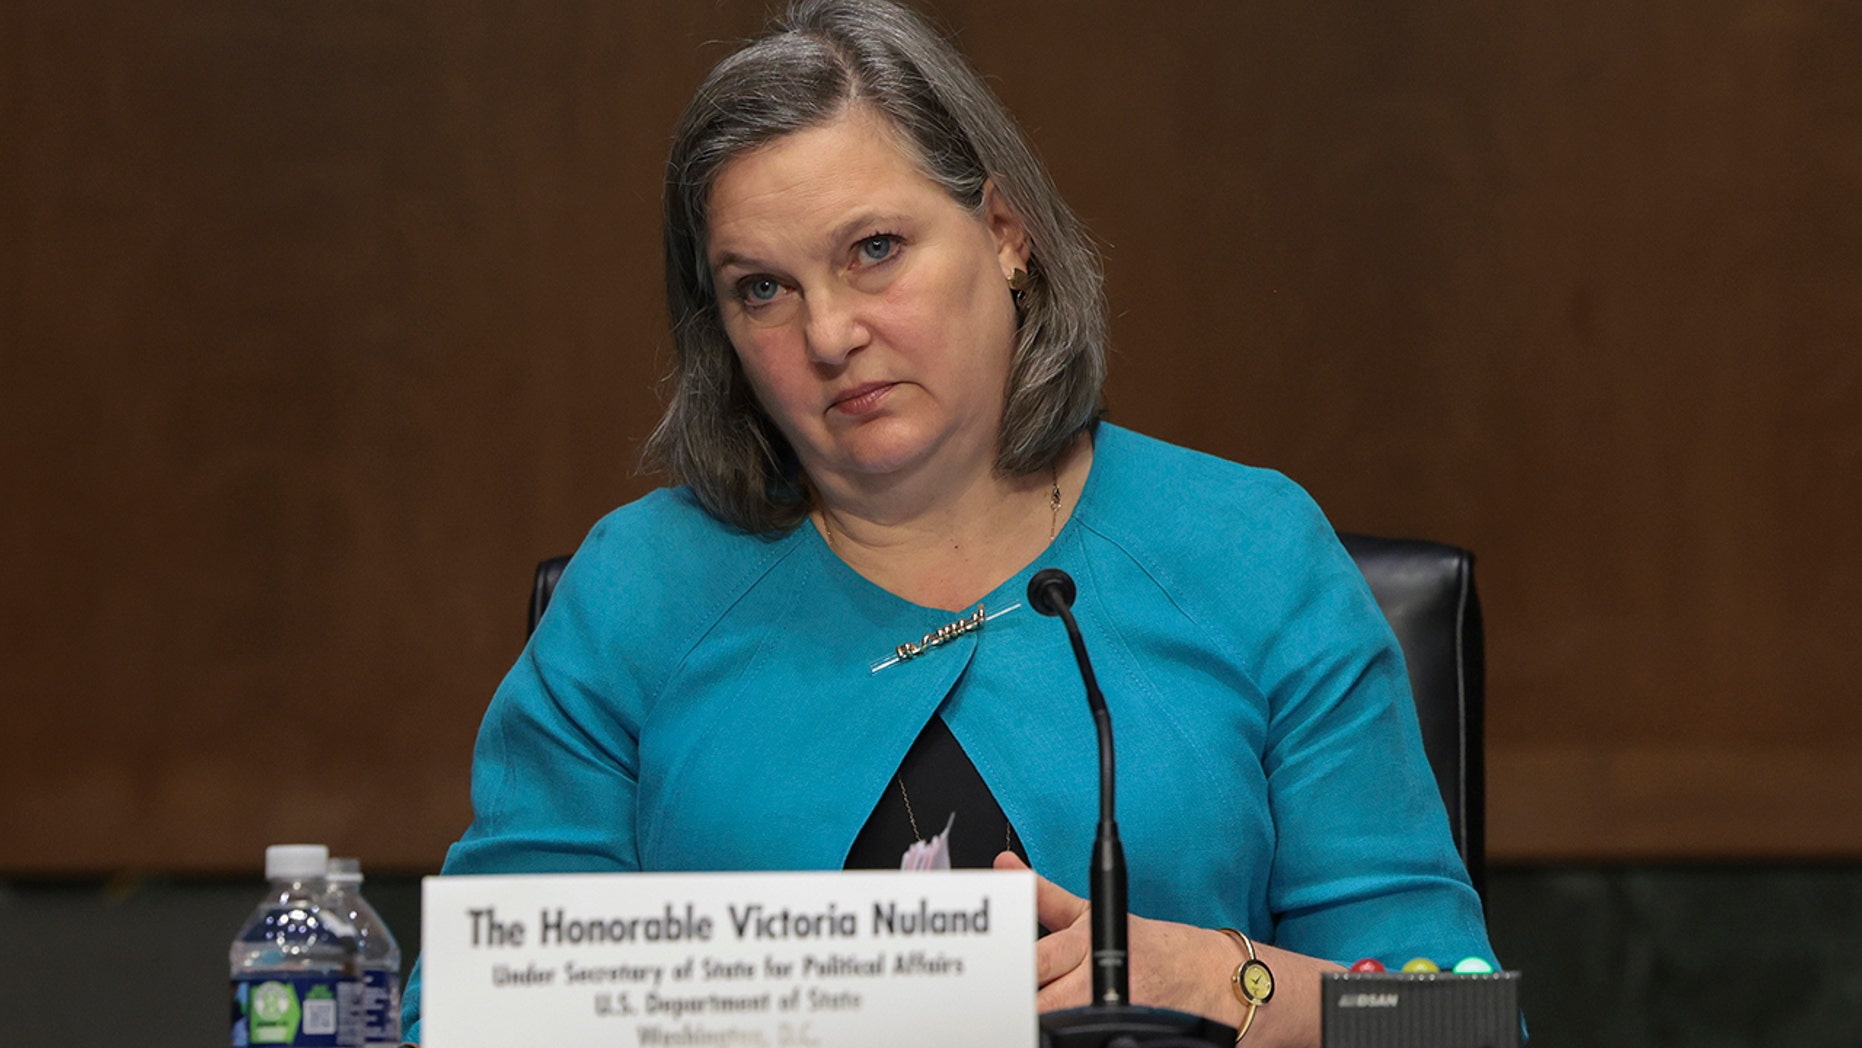 Заместитель госсекретаря по политическим вопросам Виктория Нуланд дает показания перед слушаниями сенатского комитета по иностранным делам по Украине 8 марта 2022 года в Вашингтоне, округ Колумбия.